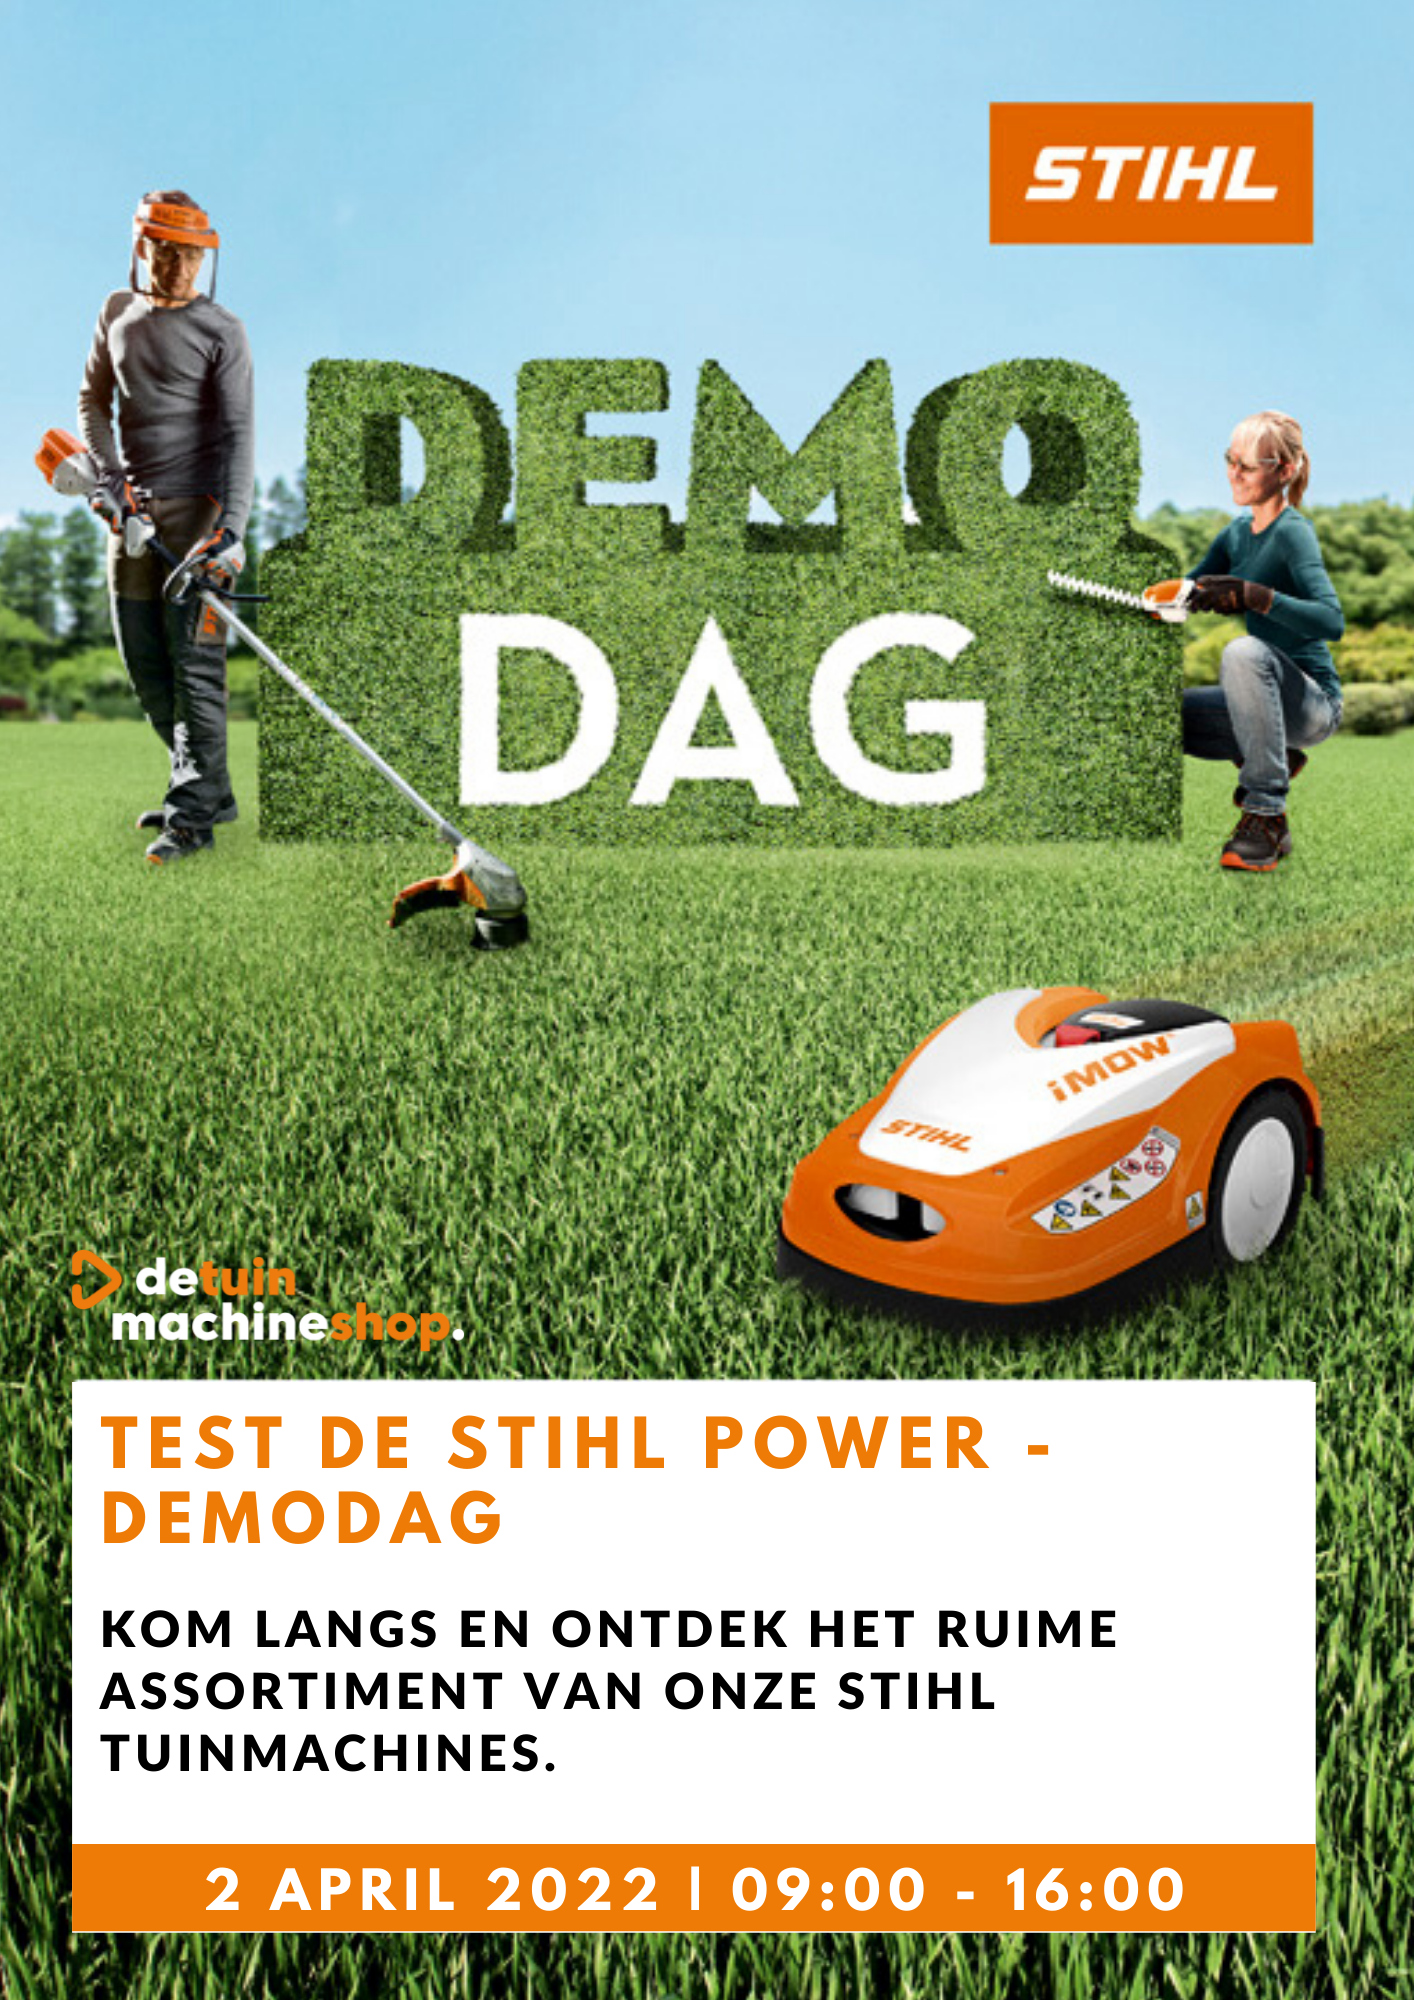 http://bestanden.detuinmachineshop.nl/images/nieuwsberichten/1.png